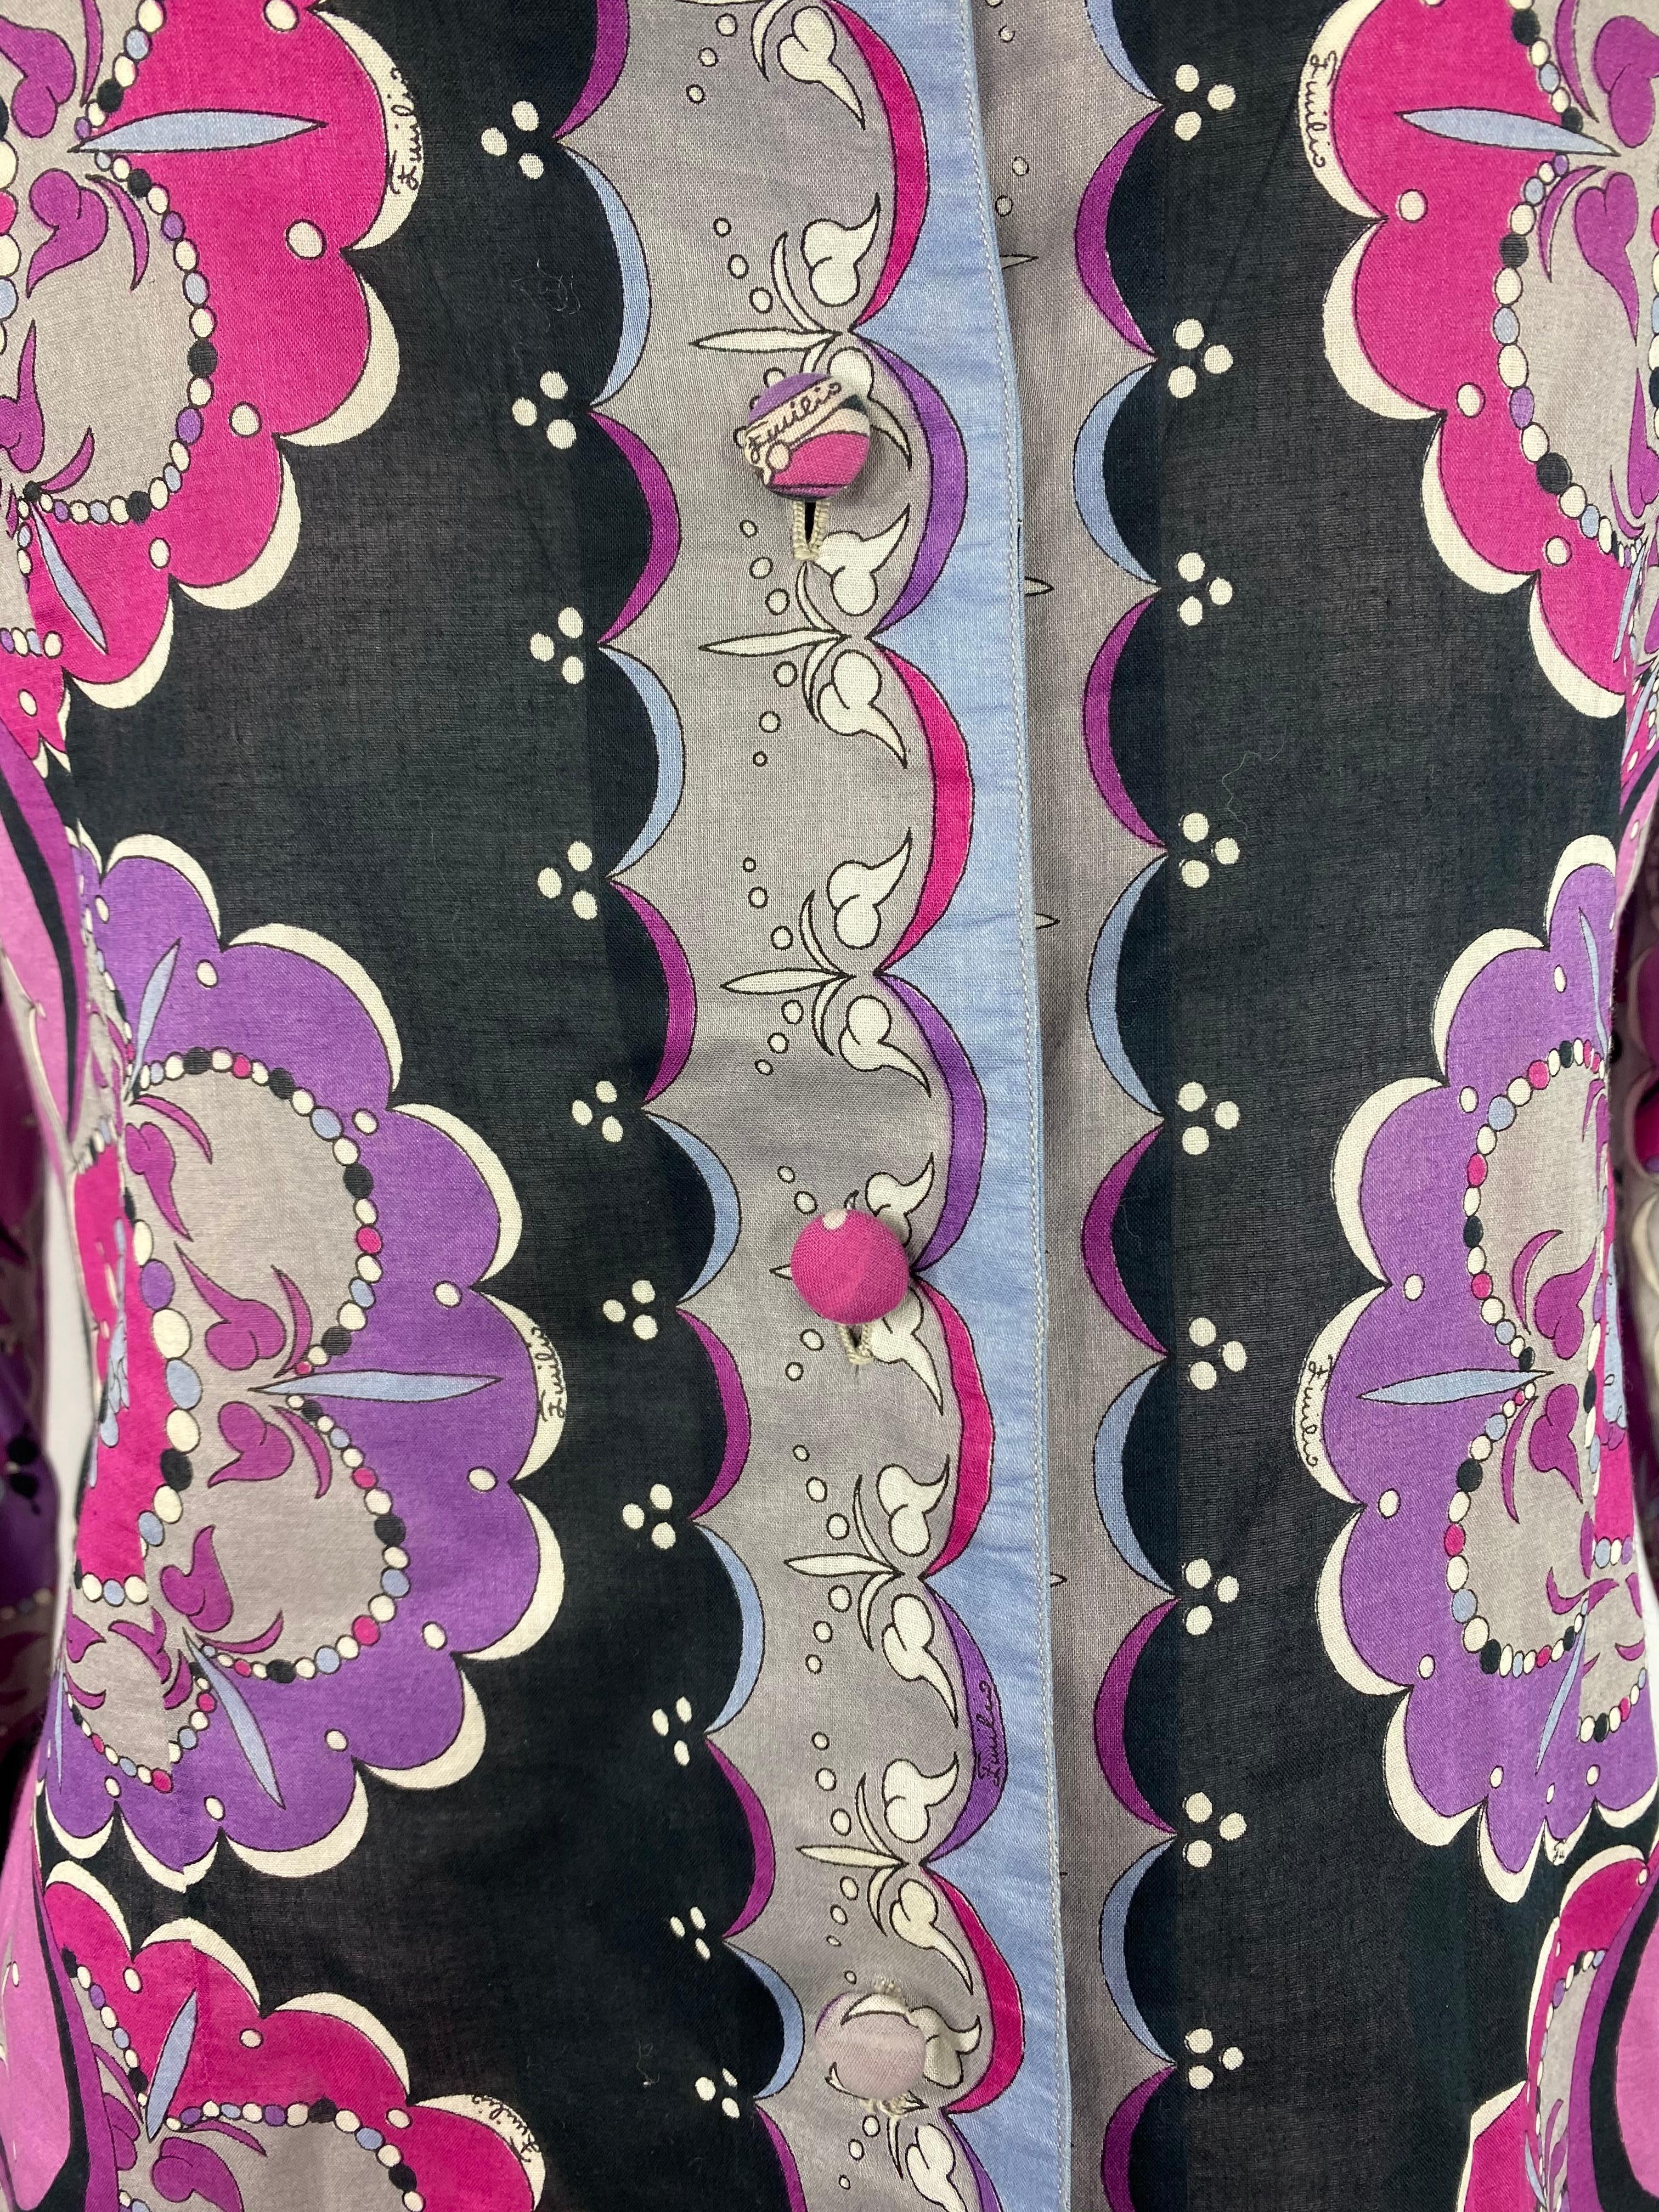 Einzelheiten zum Produkt:

Mit lila, blau, grau, schwarz und weiß mit floralem und geometrischem Motivmuster Button-Down-Hemd mit Kragen Design.